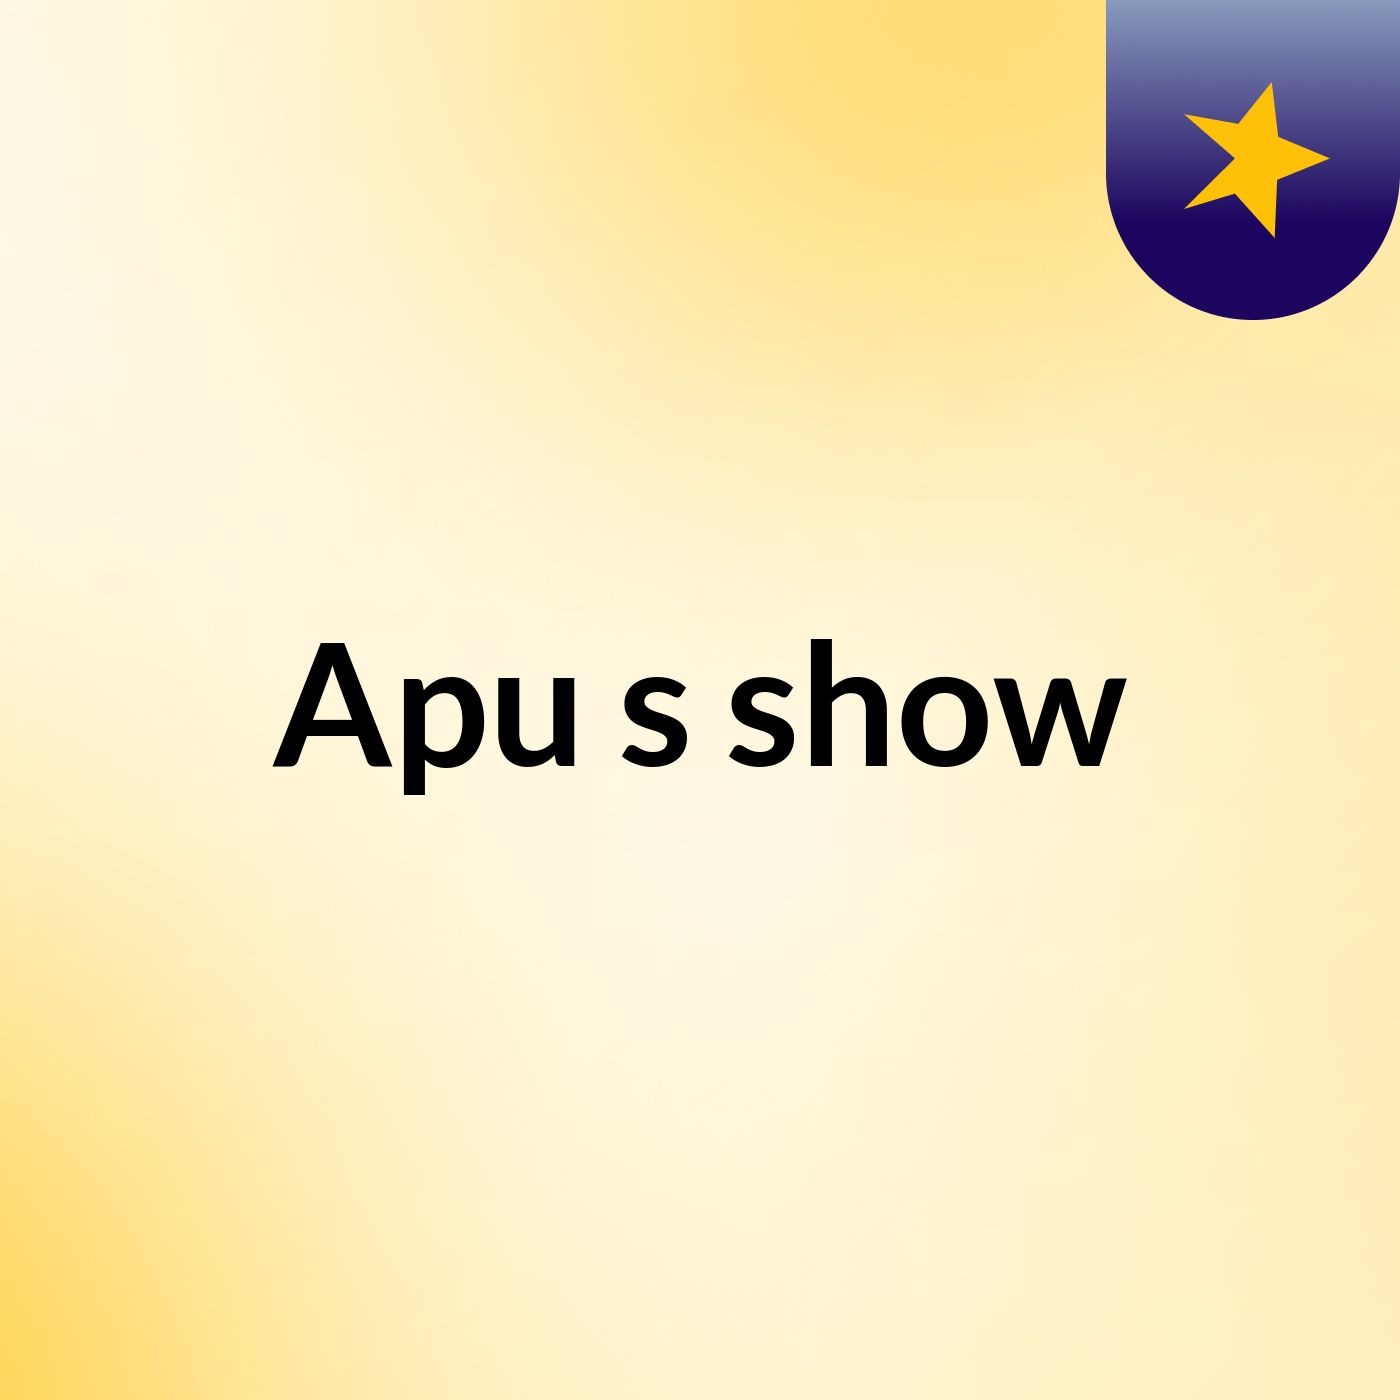 Apu's show